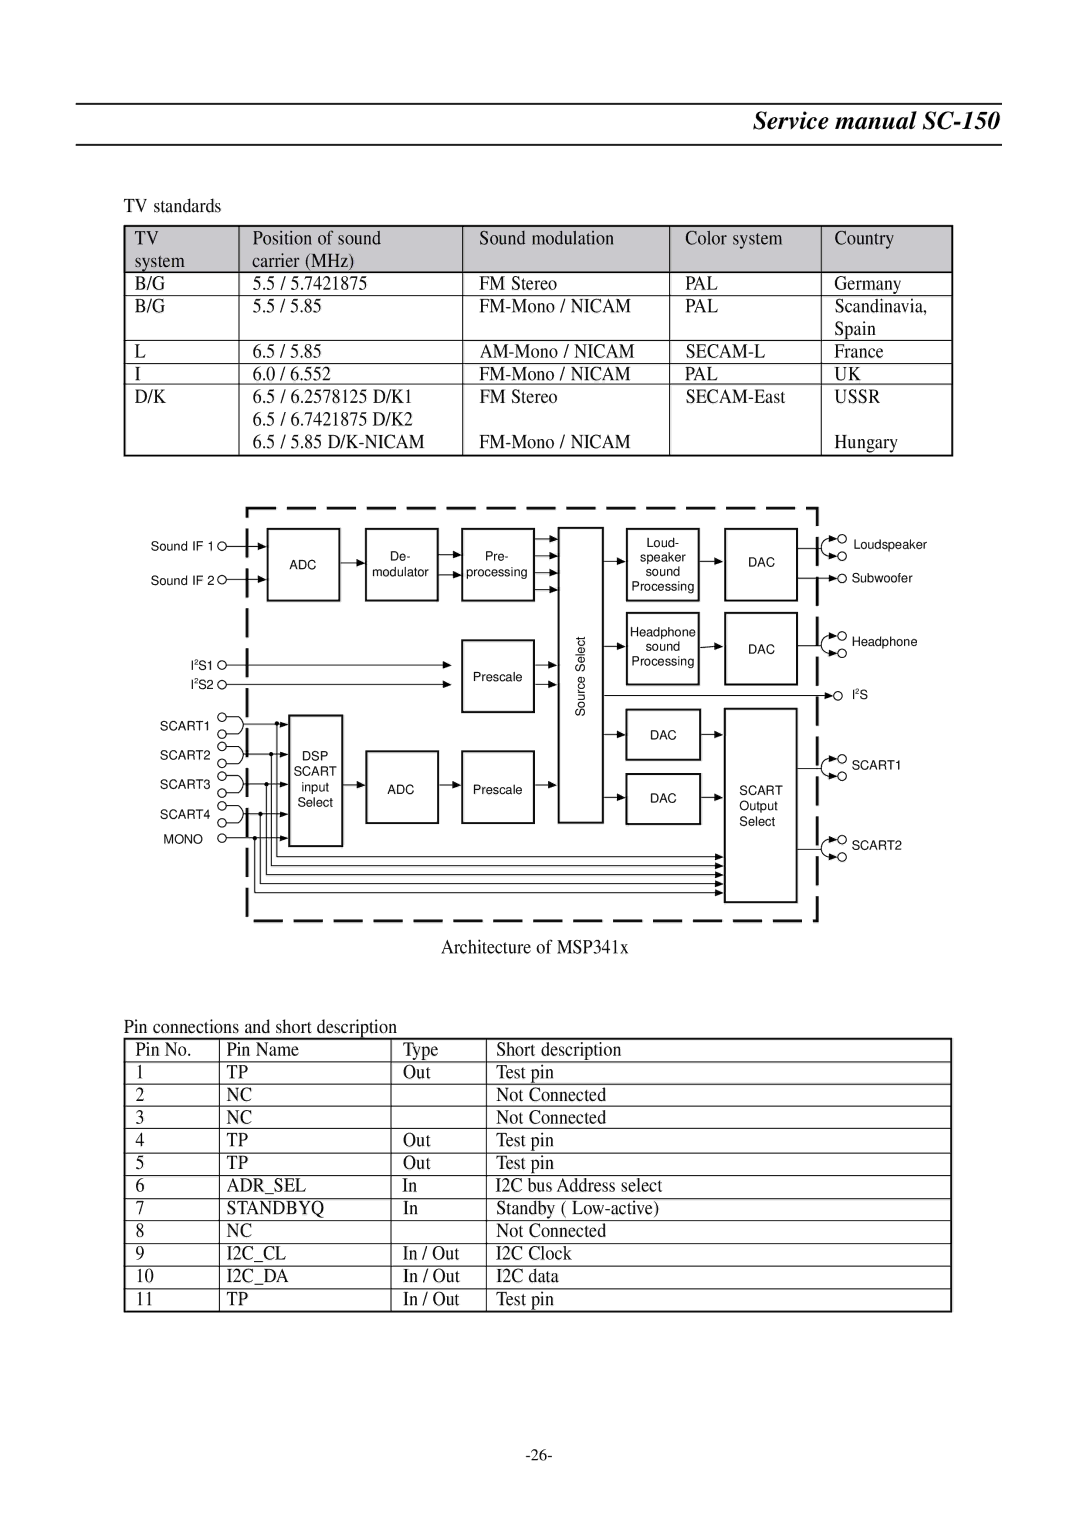 Daewoo DSC-3220E/3220L service manual Pal, Secam-L, Ussr, Adrsel, Standbyq, I2CCL, I2CDA 